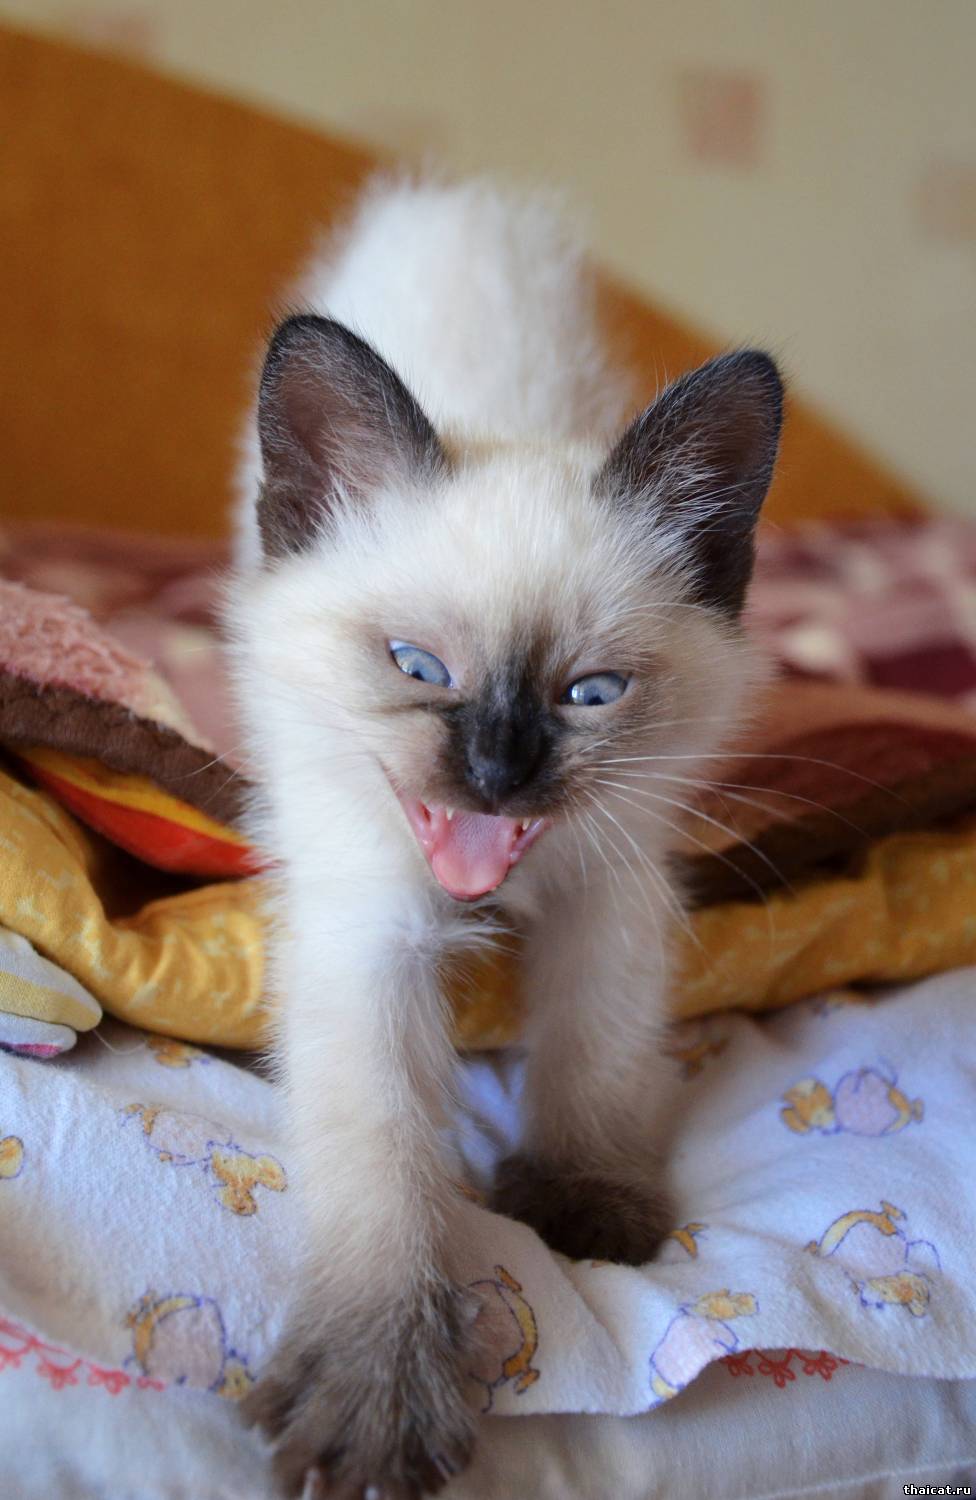 Thai kitten is yawning